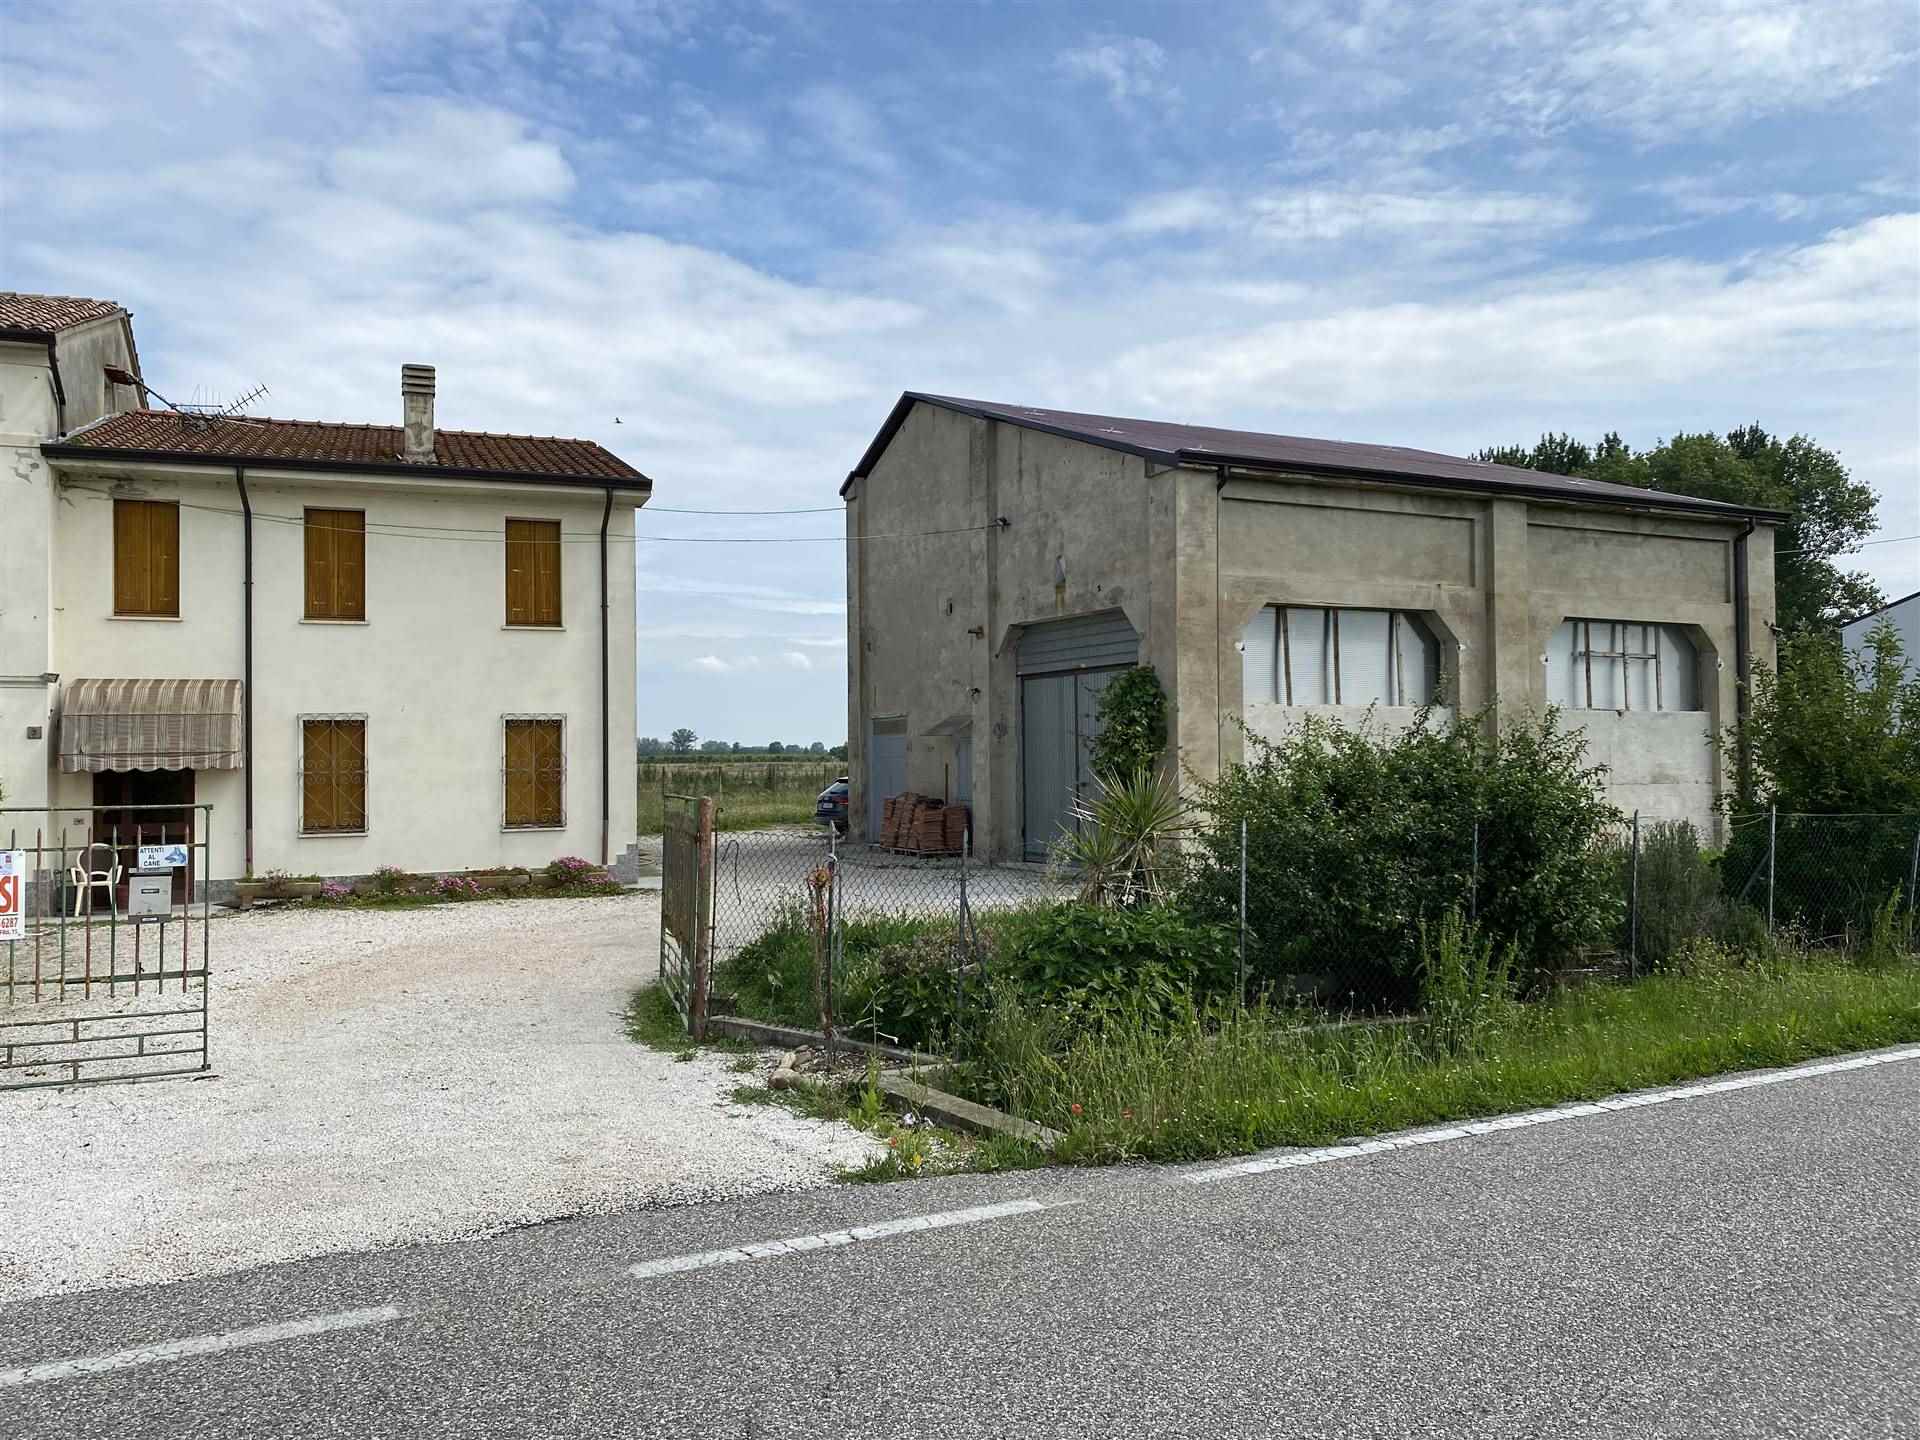 Rustico / Casale in vendita a Schivenoglia, 11 locali, Trattative riservate | PortaleAgenzieImmobiliari.it